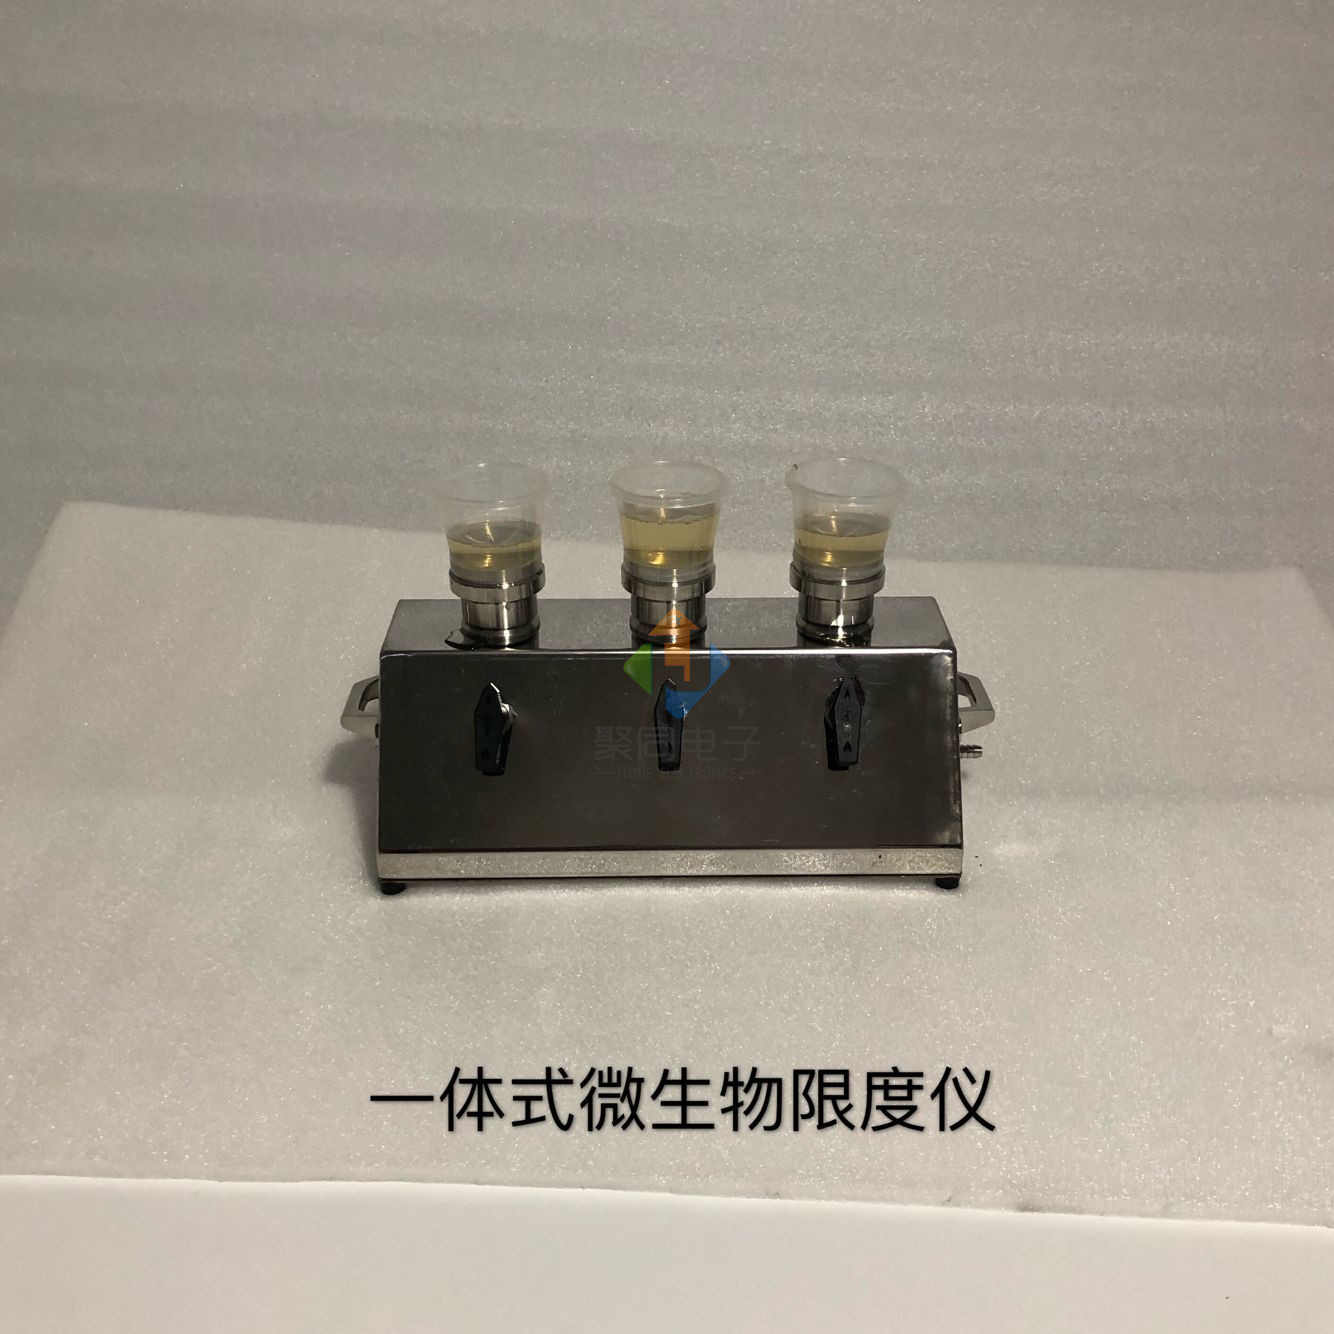 铜陵不锈钢薄膜过滤器JTW-300B微生物限度仪